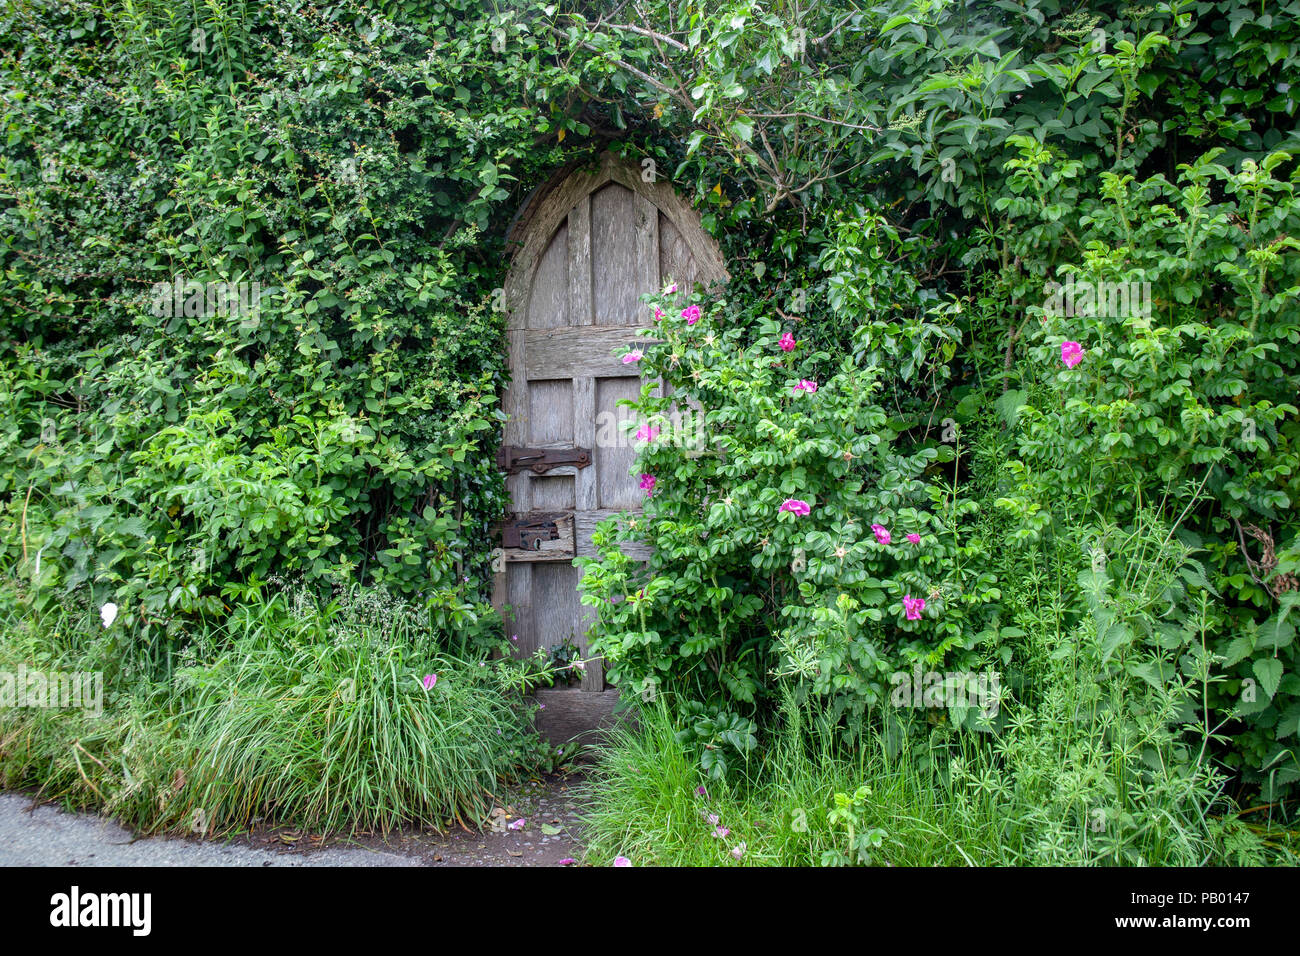 Una muy antigua puerta arqueado con una cerradura y pestillo roto- medio escondida por vegitation rugosa y rosas. Foto de stock